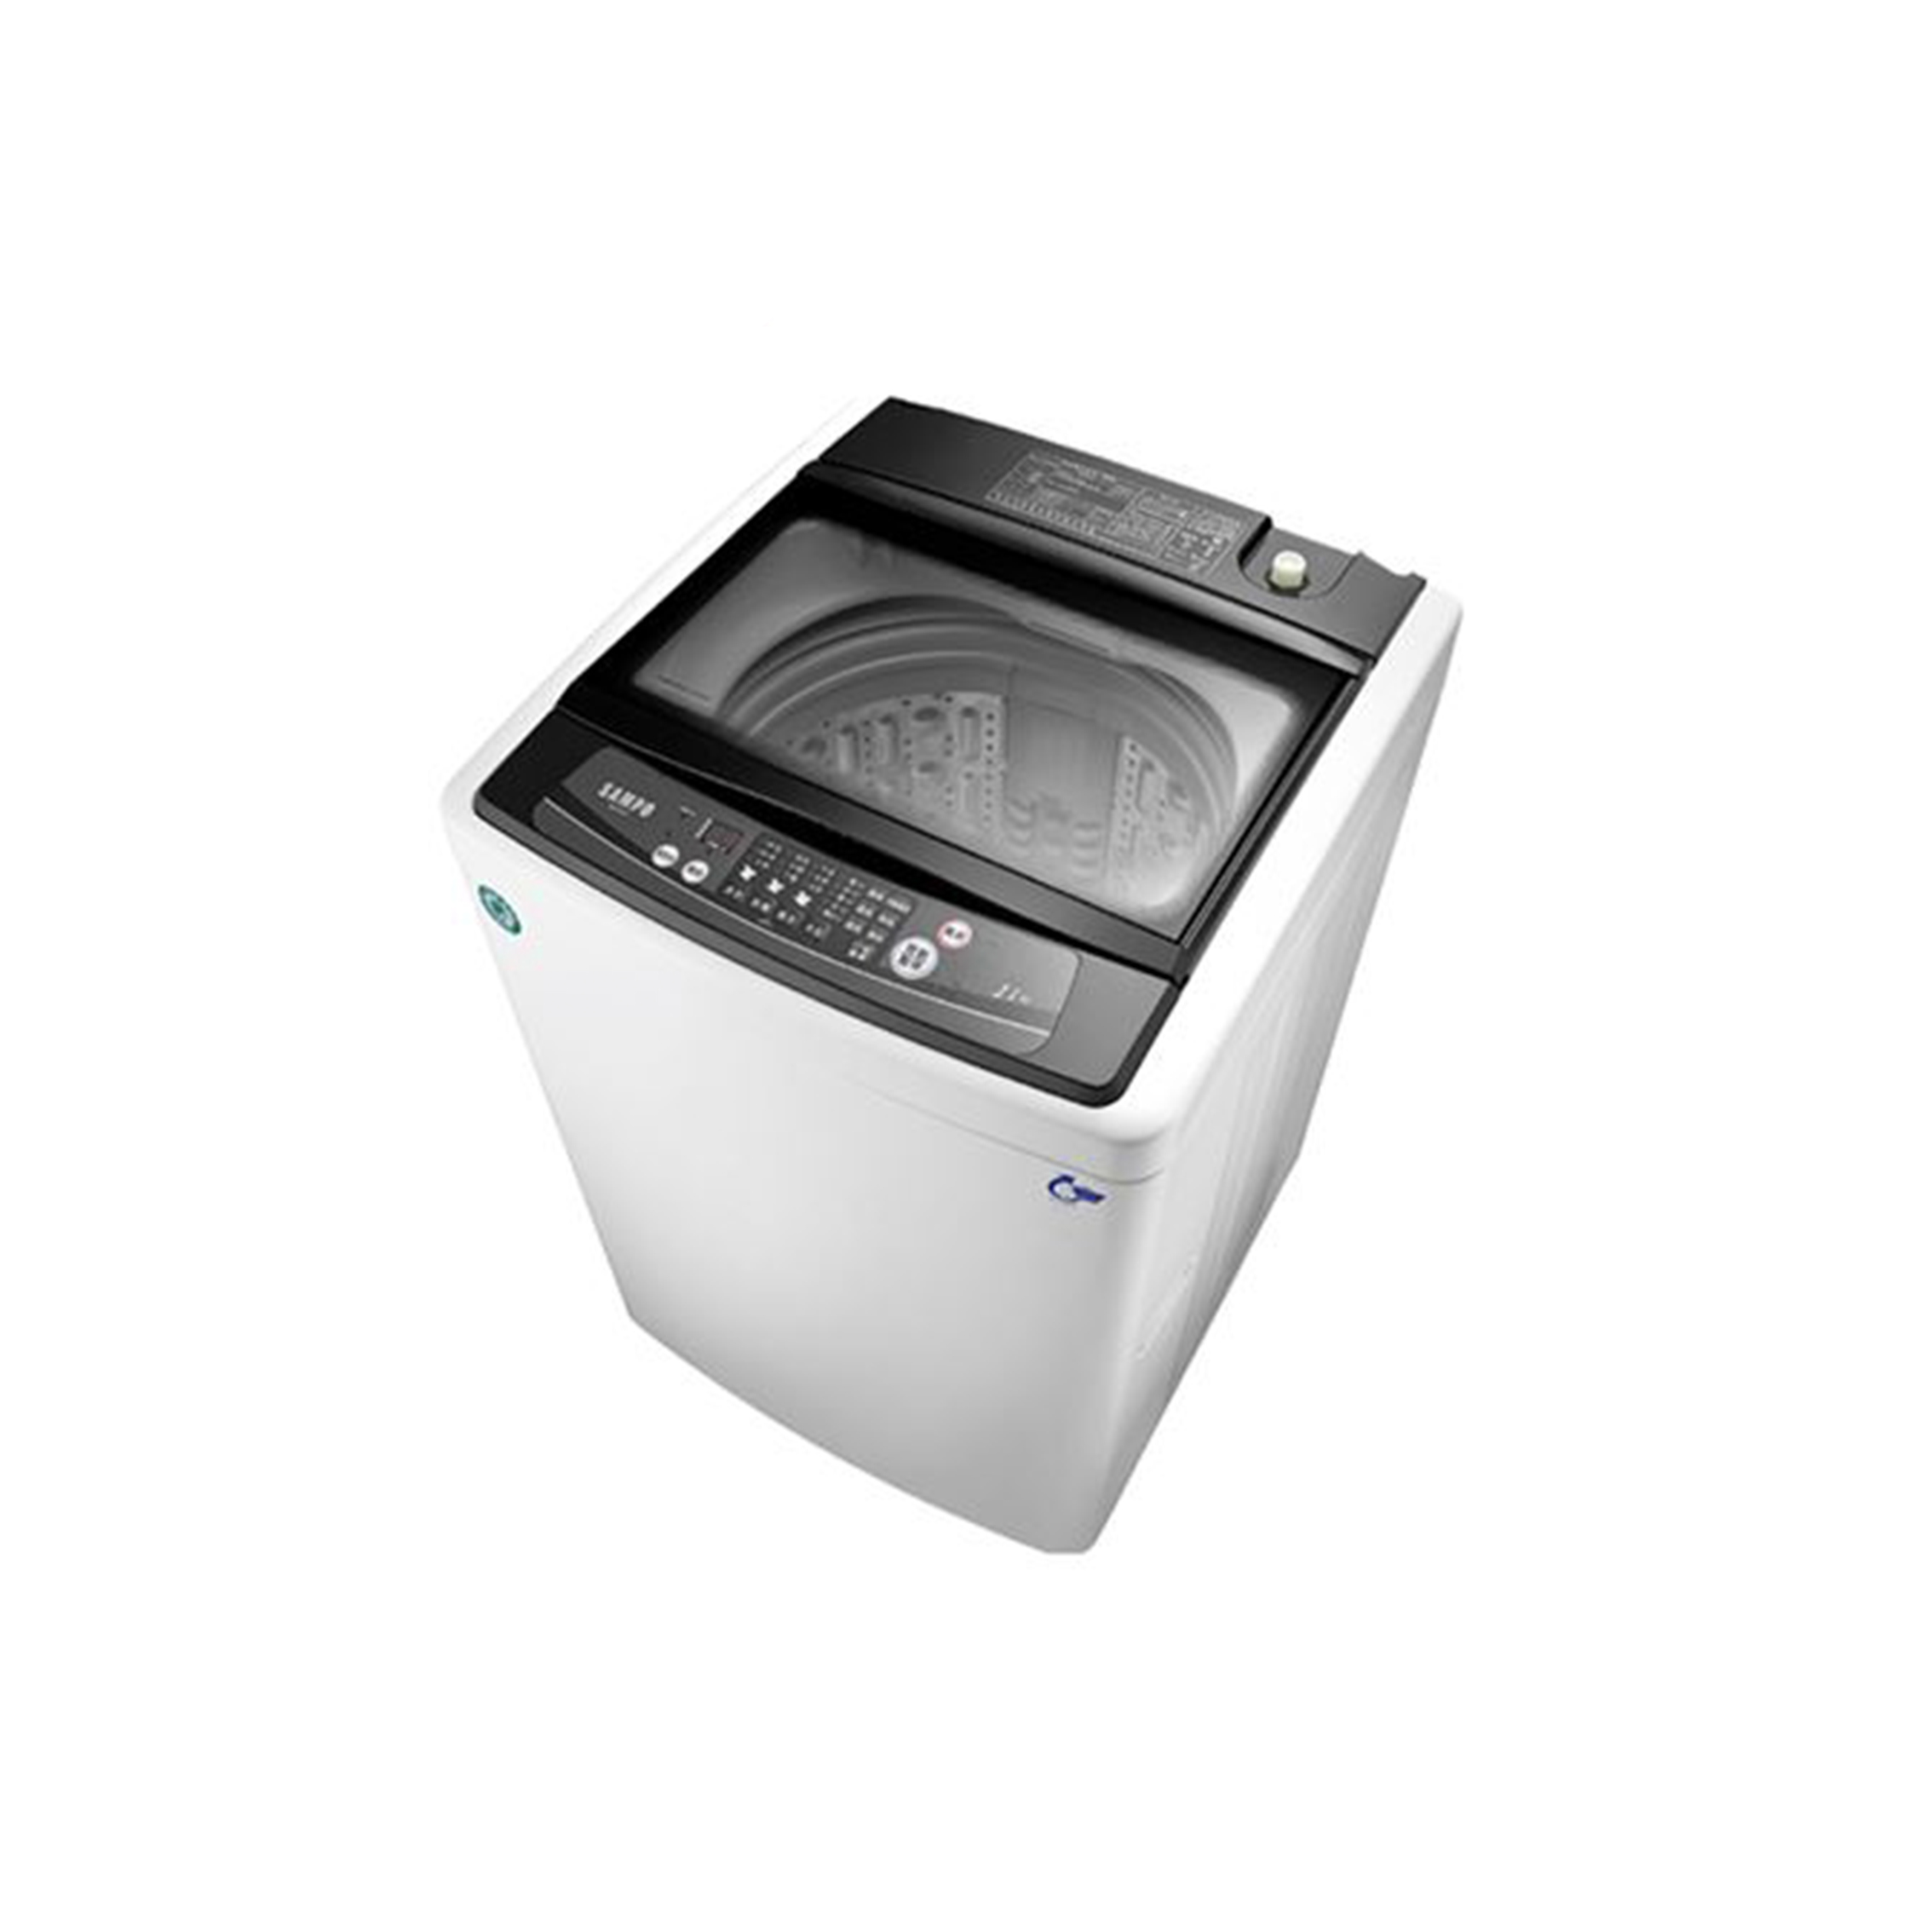 SAMPO聲寶 11公斤全自動洗衣機ES-H11F(W1) 免卡分期